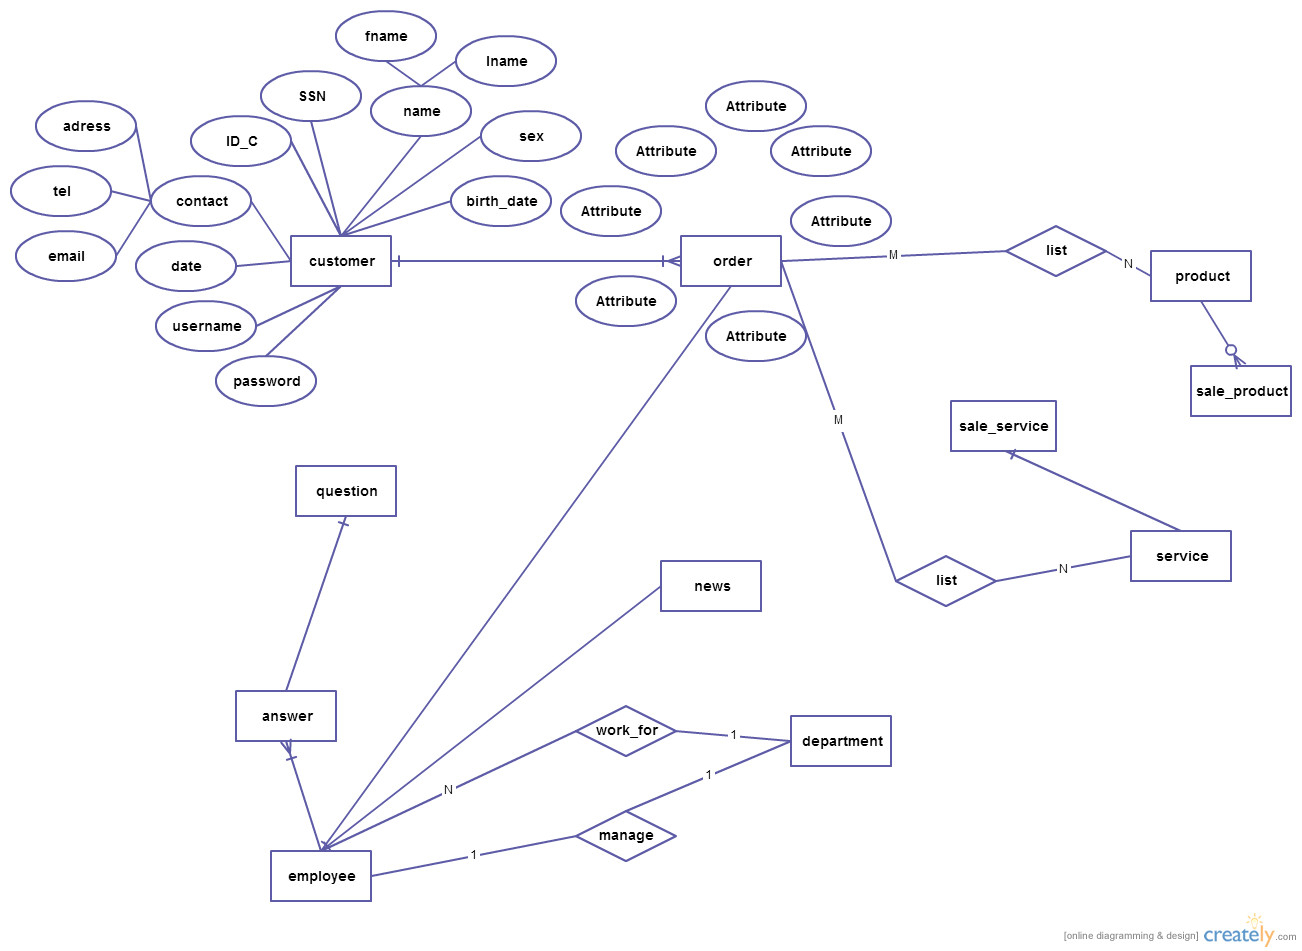 Xk_9244] Shopping Cart Entity Relationship Diagram Creately